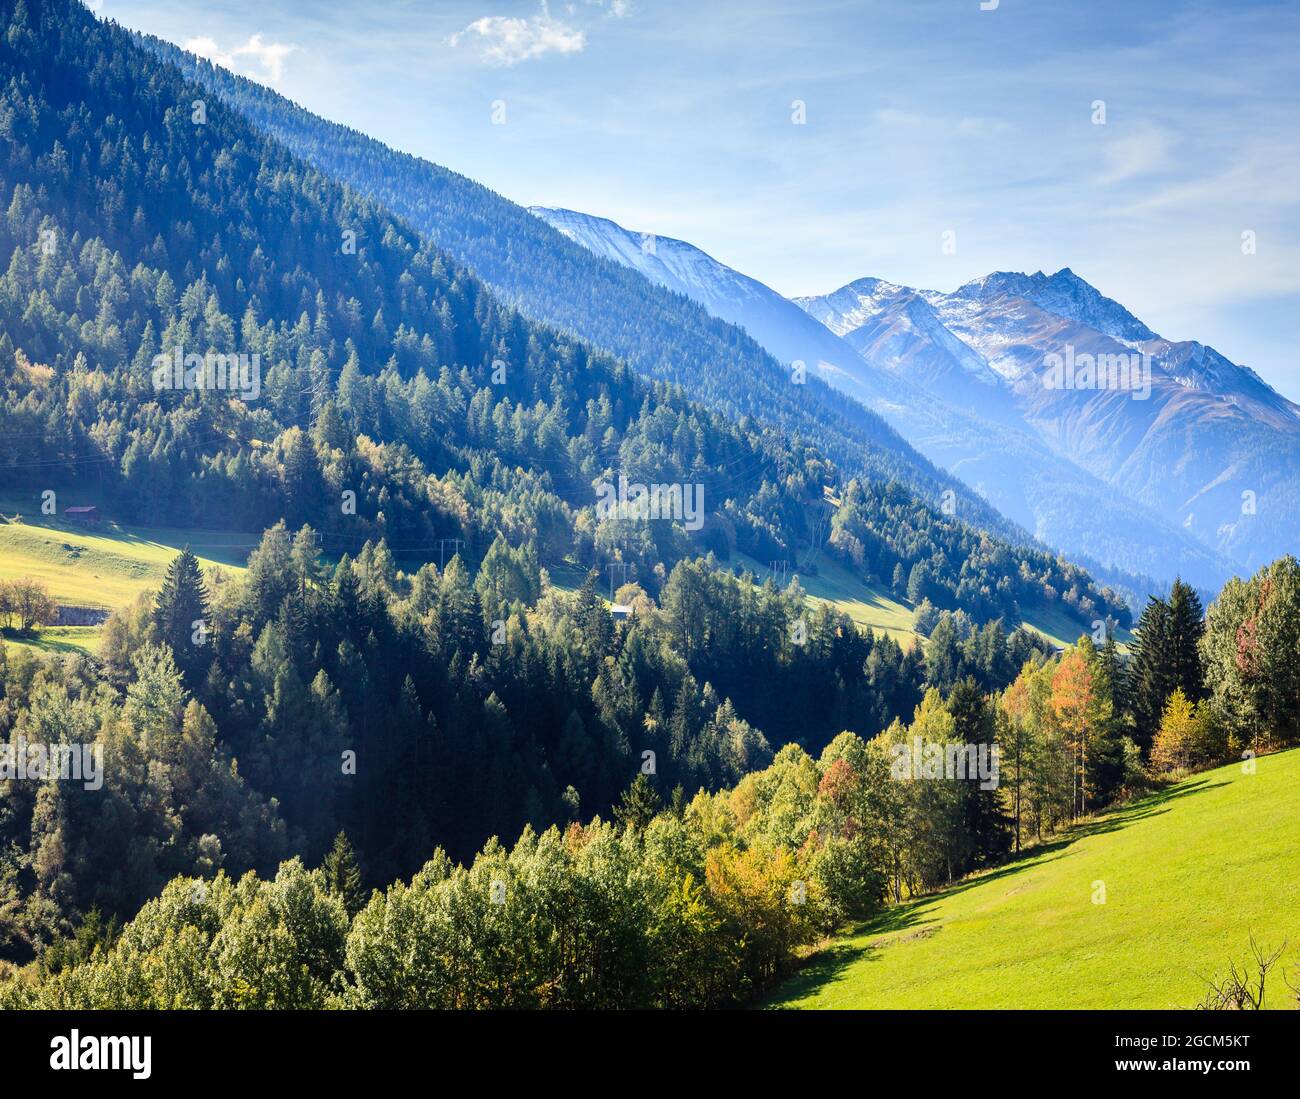 Vista panorámica de un valle en los Alpes suizos en verano Foto de stock